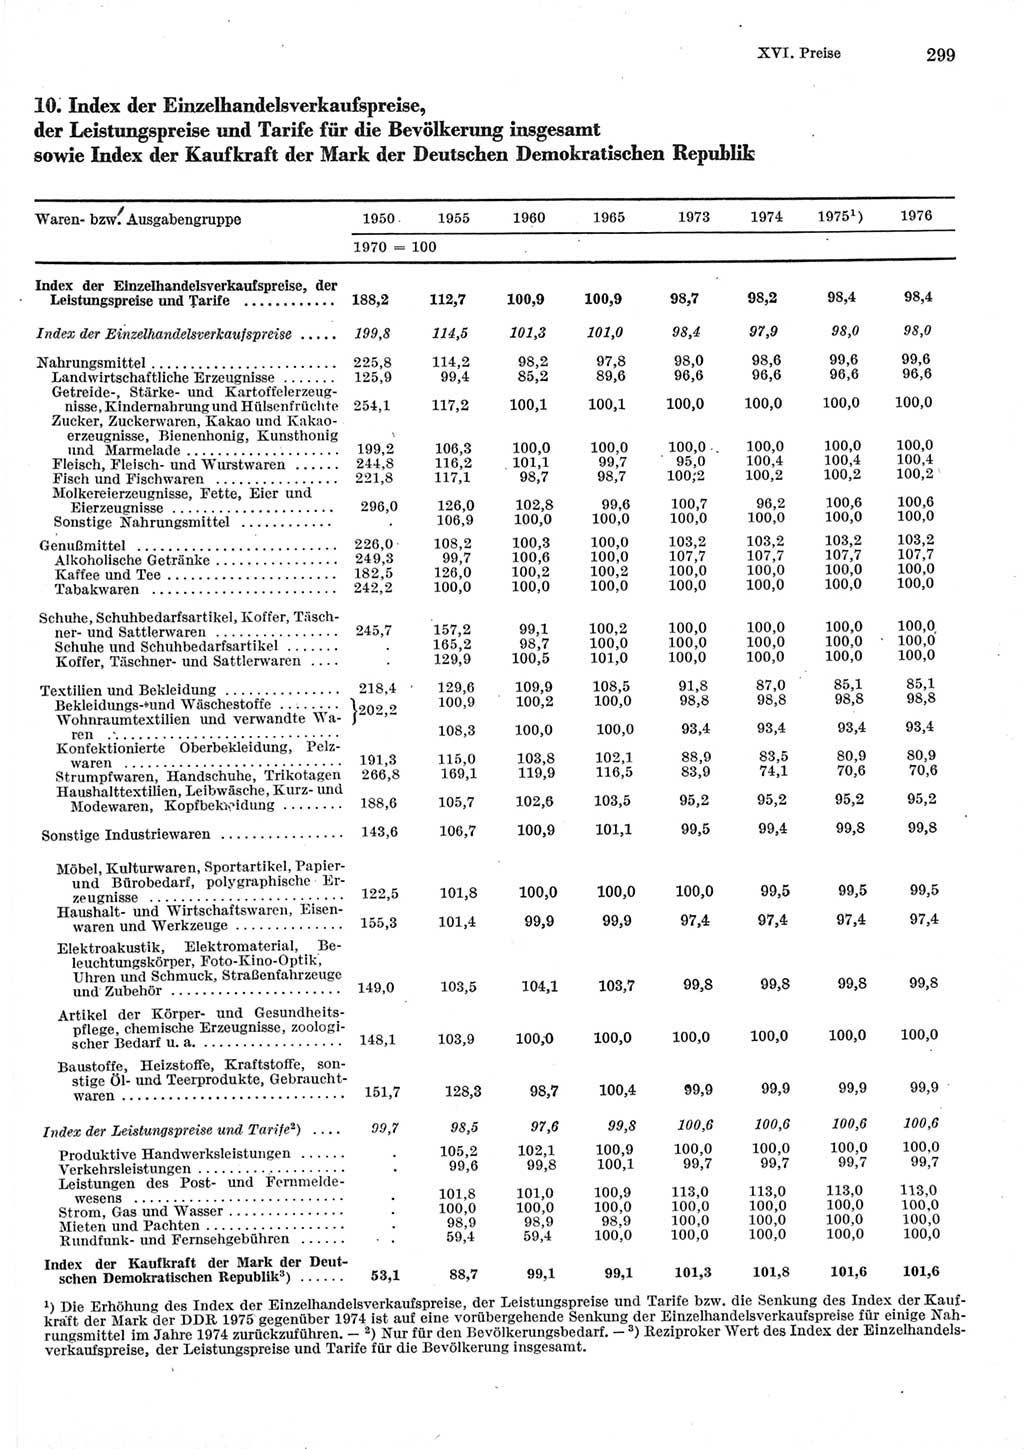 Statistisches Jahrbuch der Deutschen Demokratischen Republik (DDR) 1977, Seite 299 (Stat. Jb. DDR 1977, S. 299)